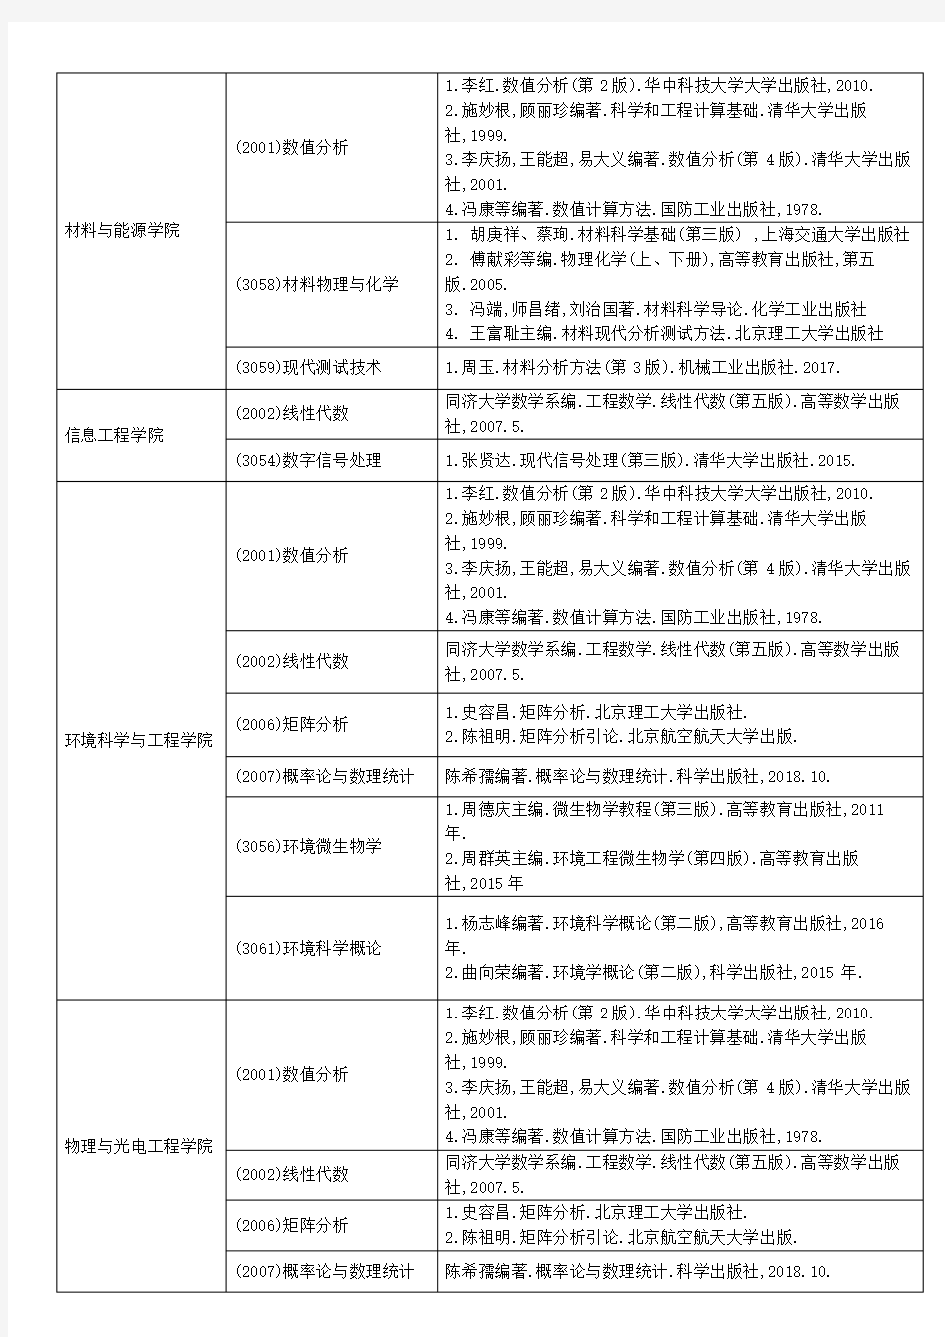 广东工业大学2020年博士研究生招生考试参考书目